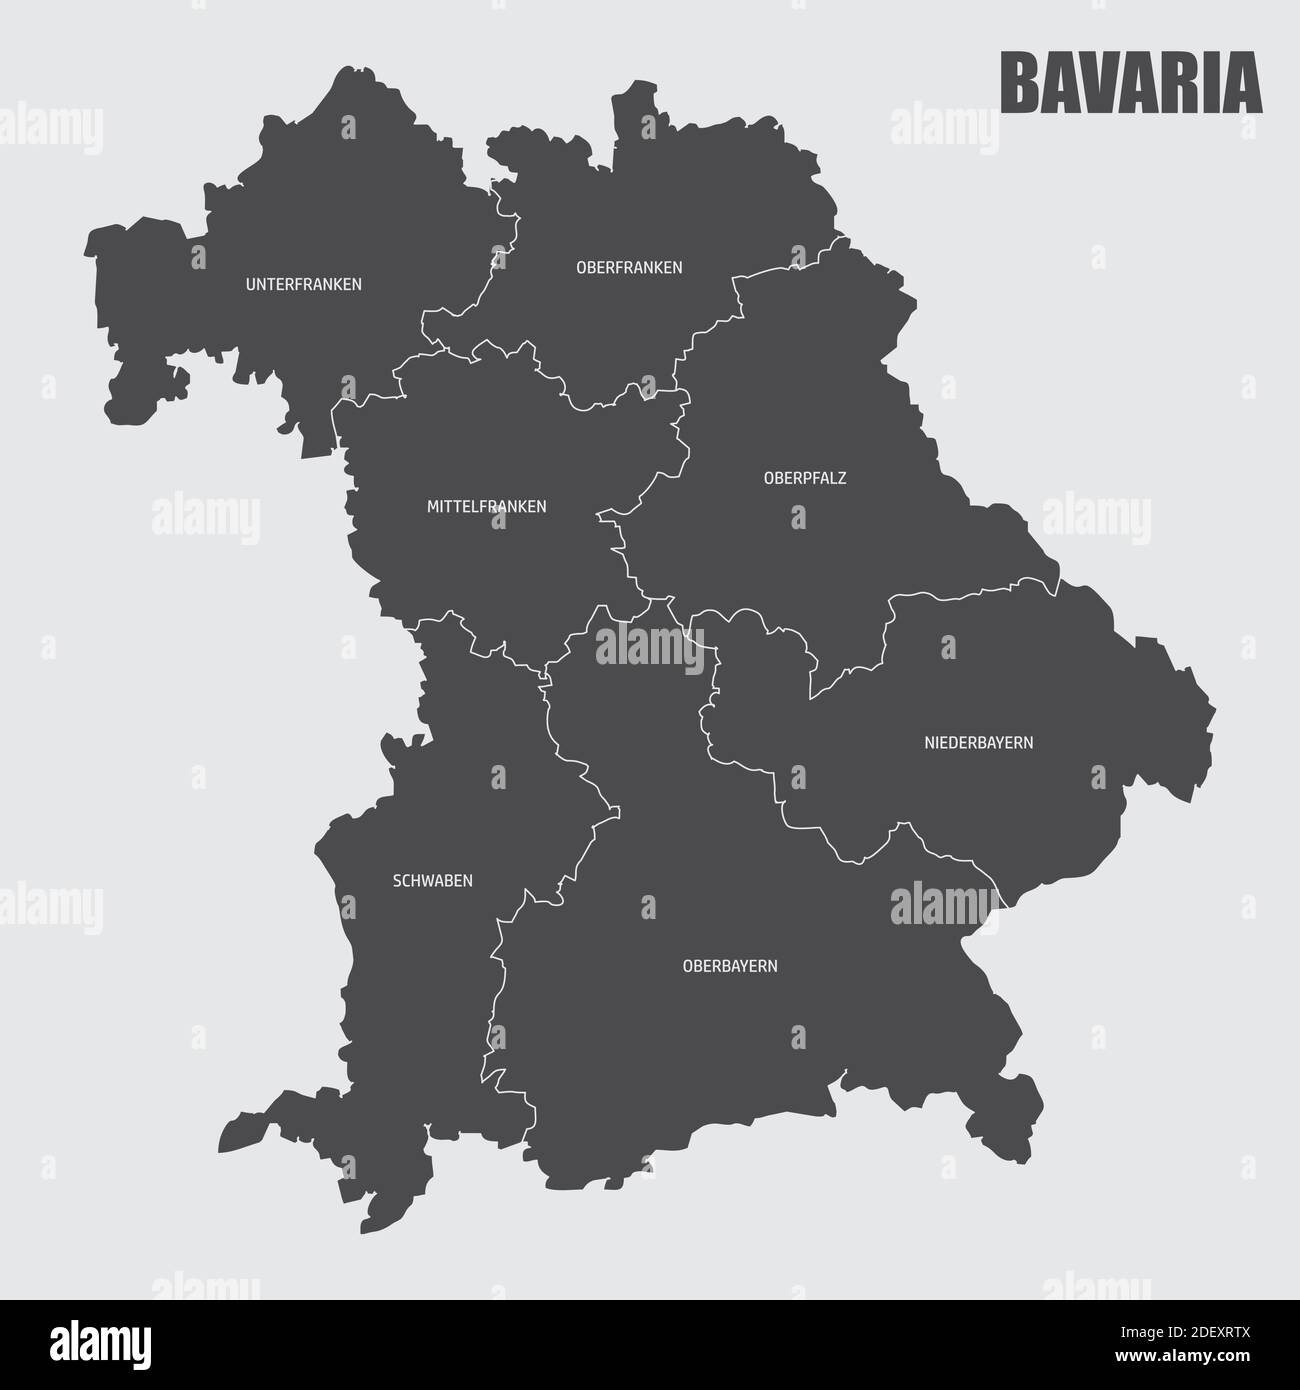 Bavaria regions map Stock Vector